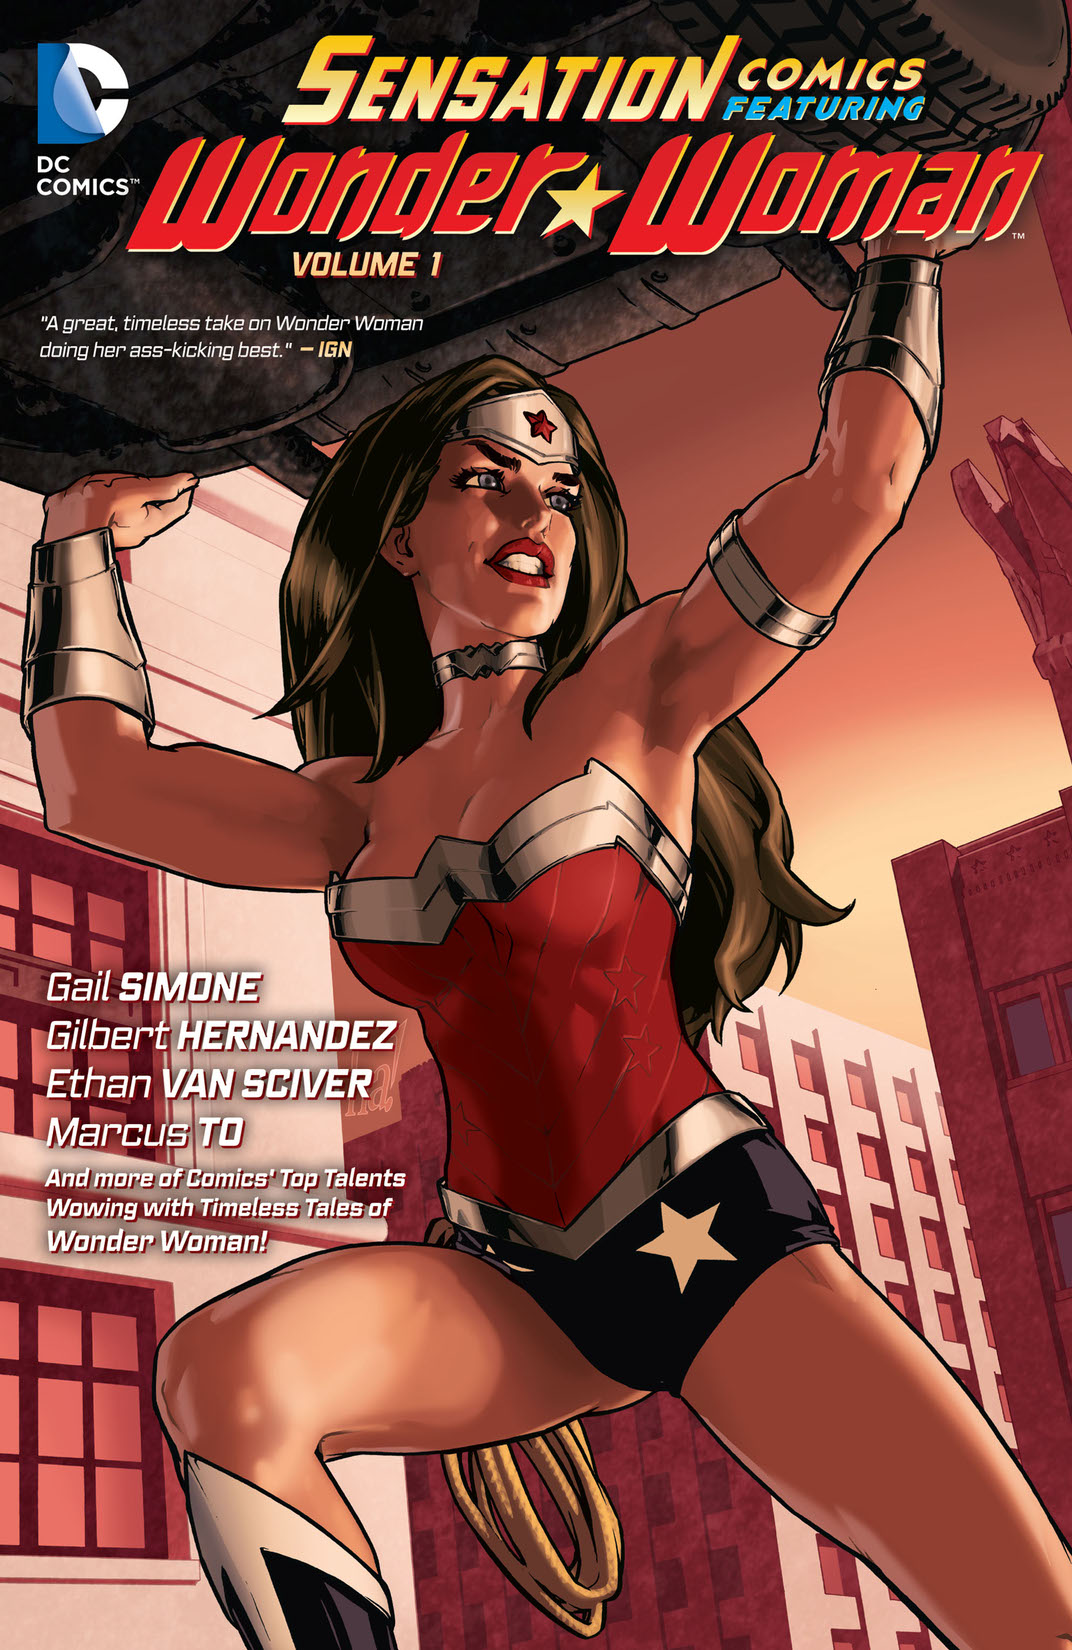 Sensation Comics Featuring Wonder Woman Vol. 1 preview images